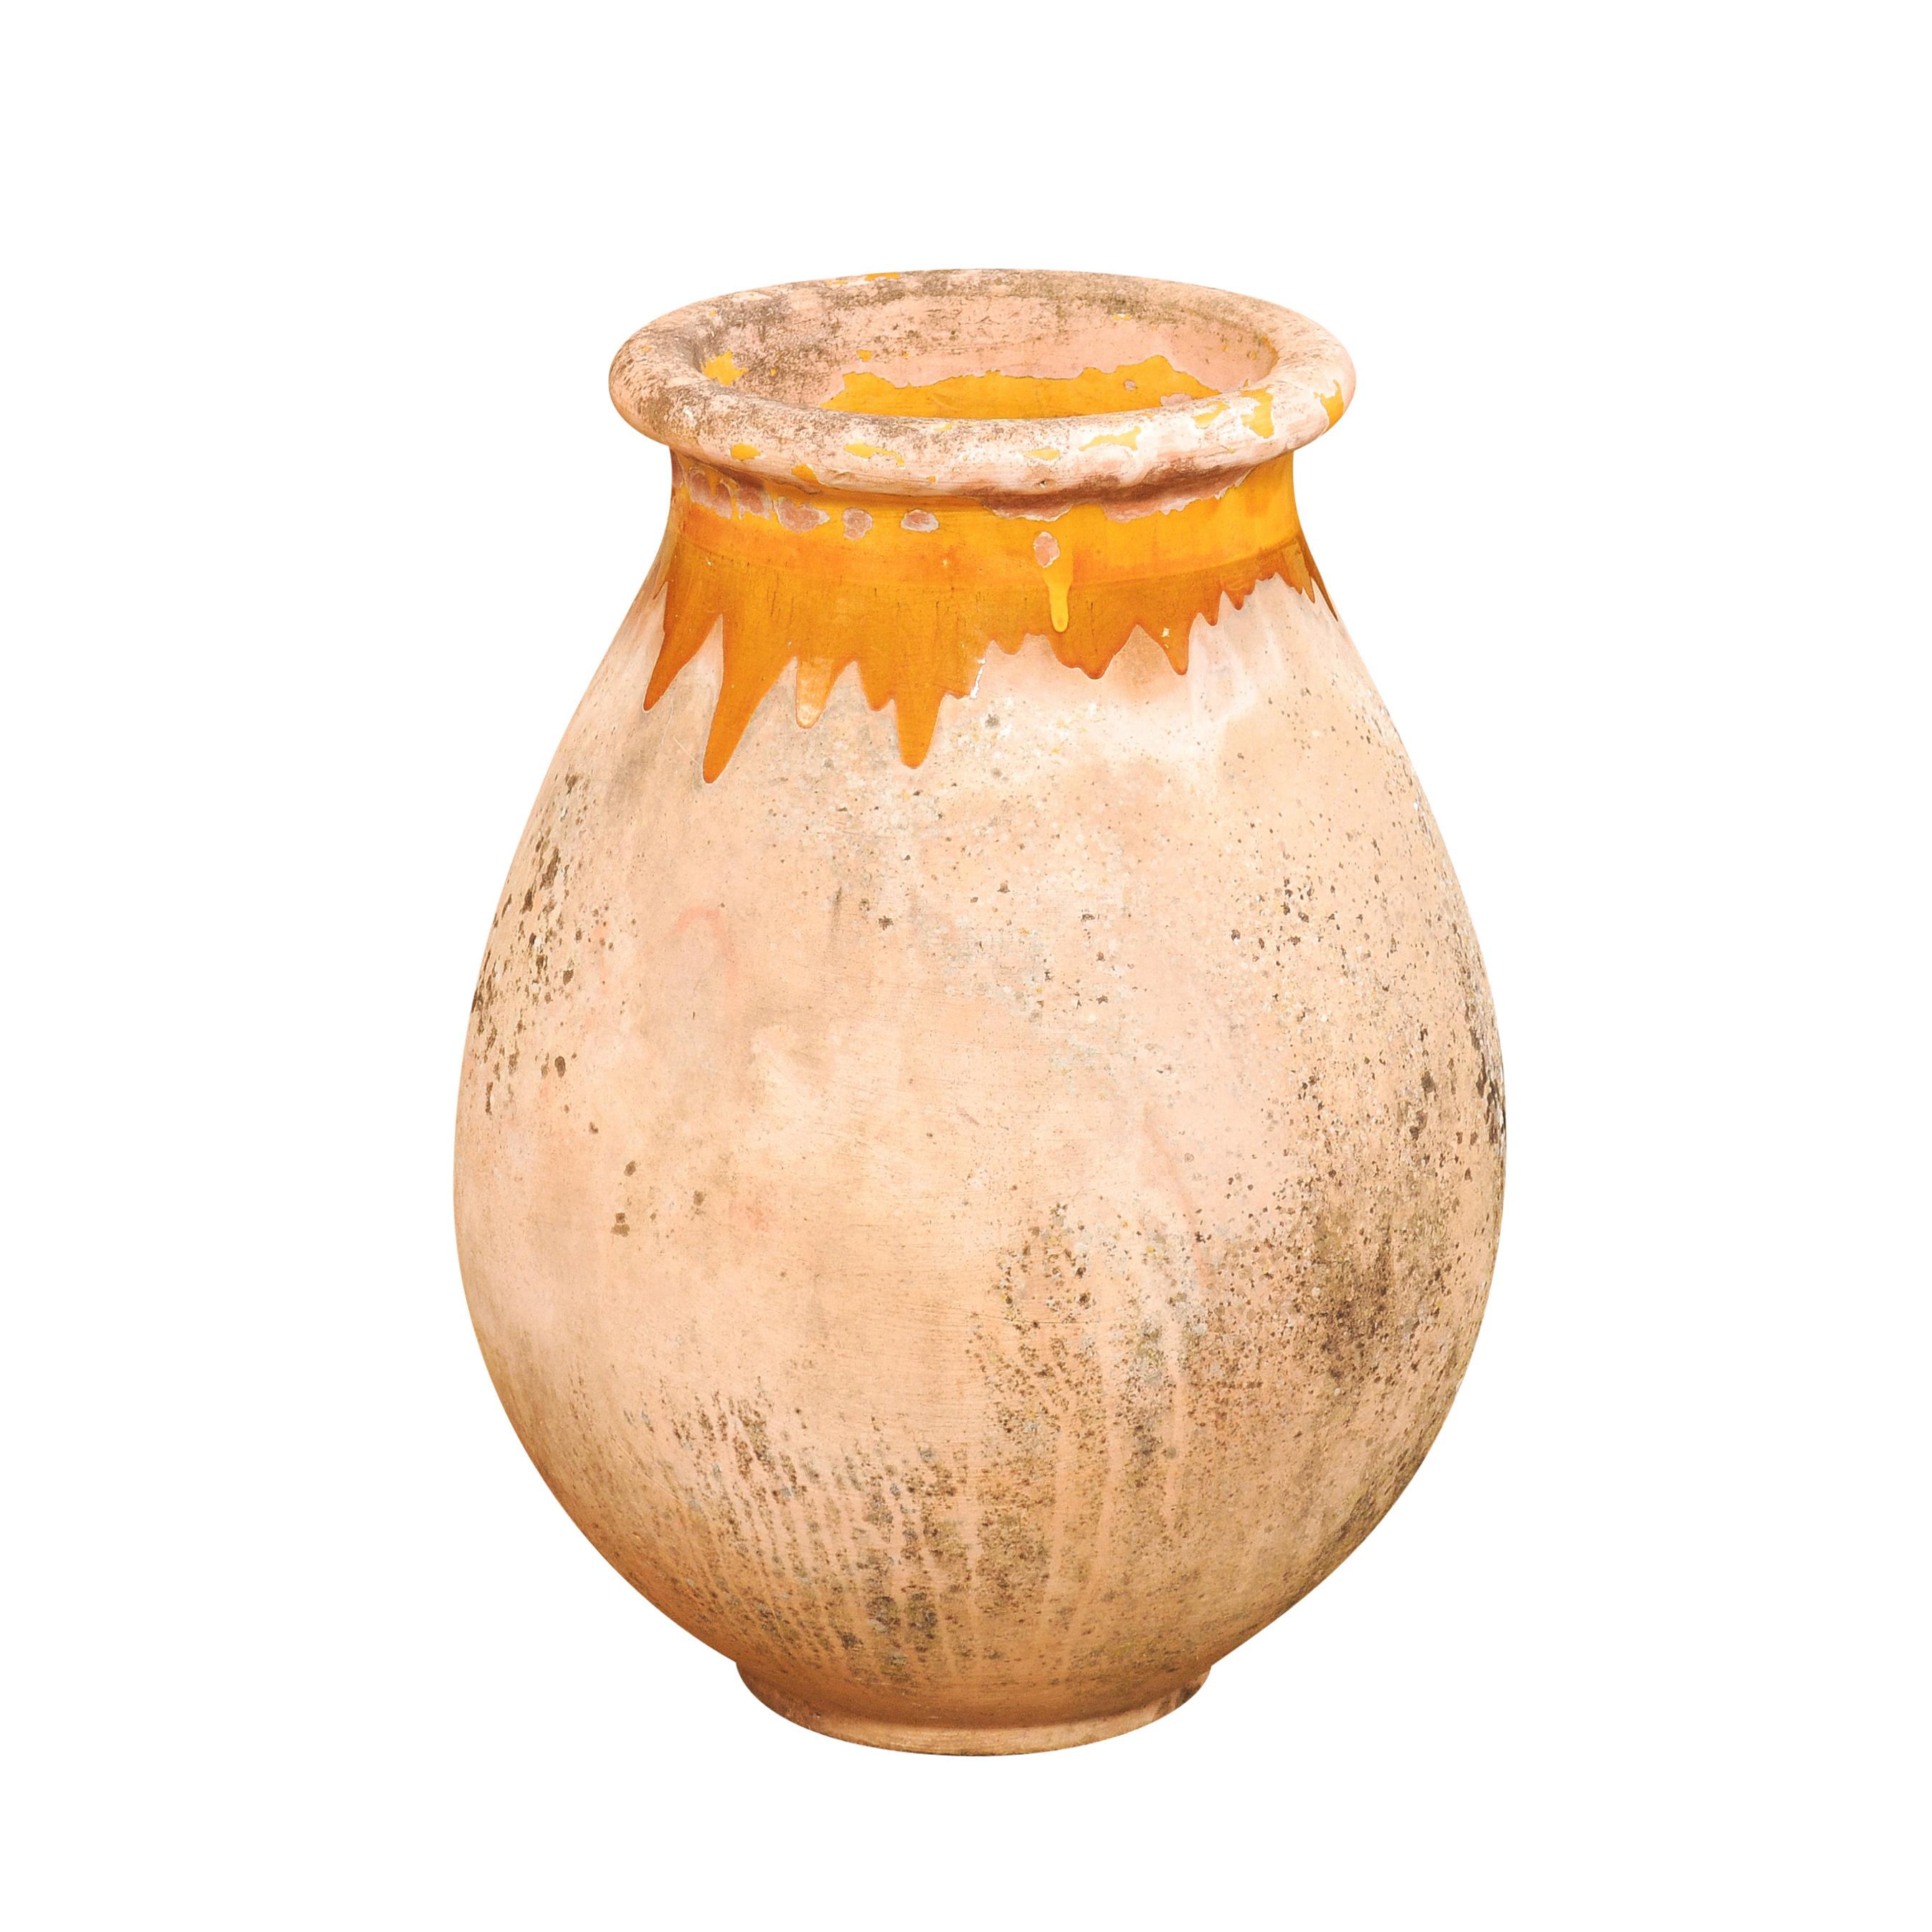 Une grande jarre en poterie provinciale française de Biot du 19ème siècle avec des gouttes émaillées jaunes et un grand caractère rustique. Élevez votre jardin ou votre espace intérieur avec cette jarre en poterie de style provincial français de